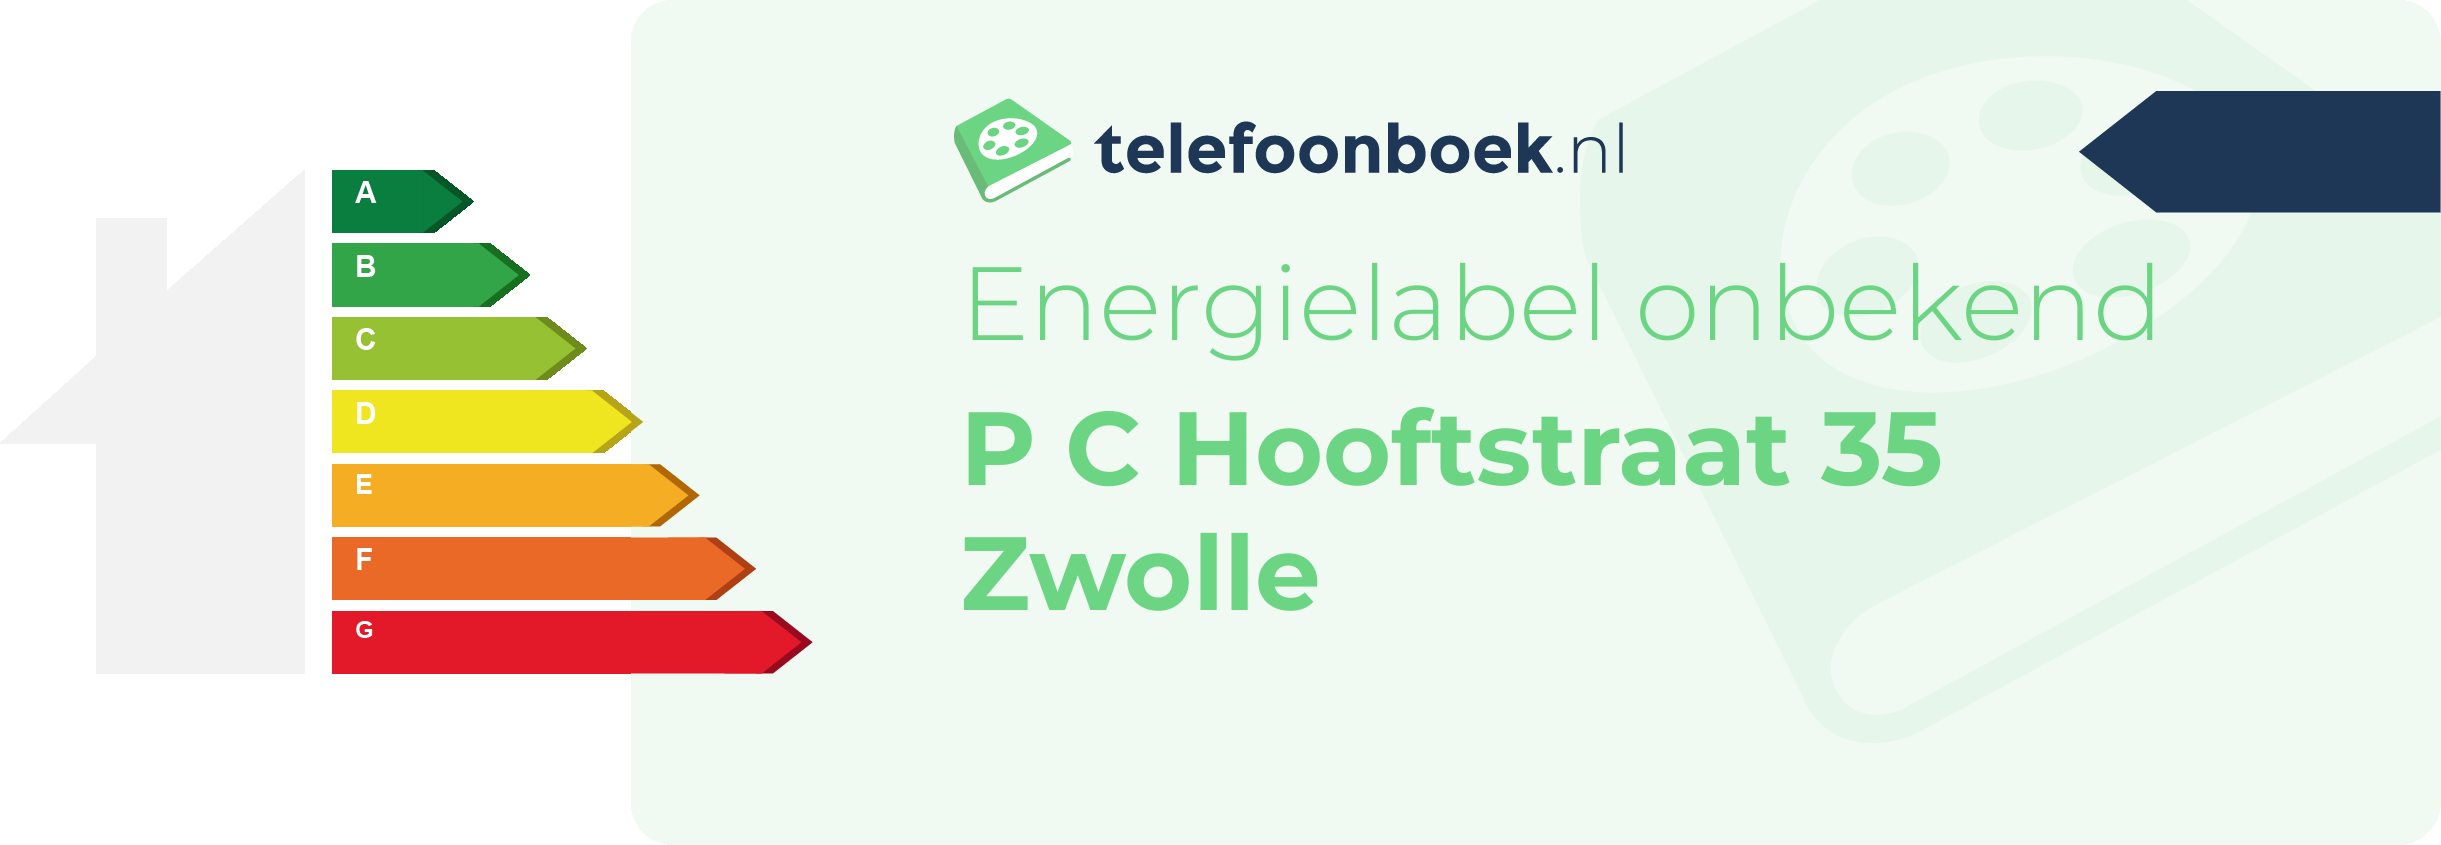 Energielabel P C Hooftstraat 35 Zwolle